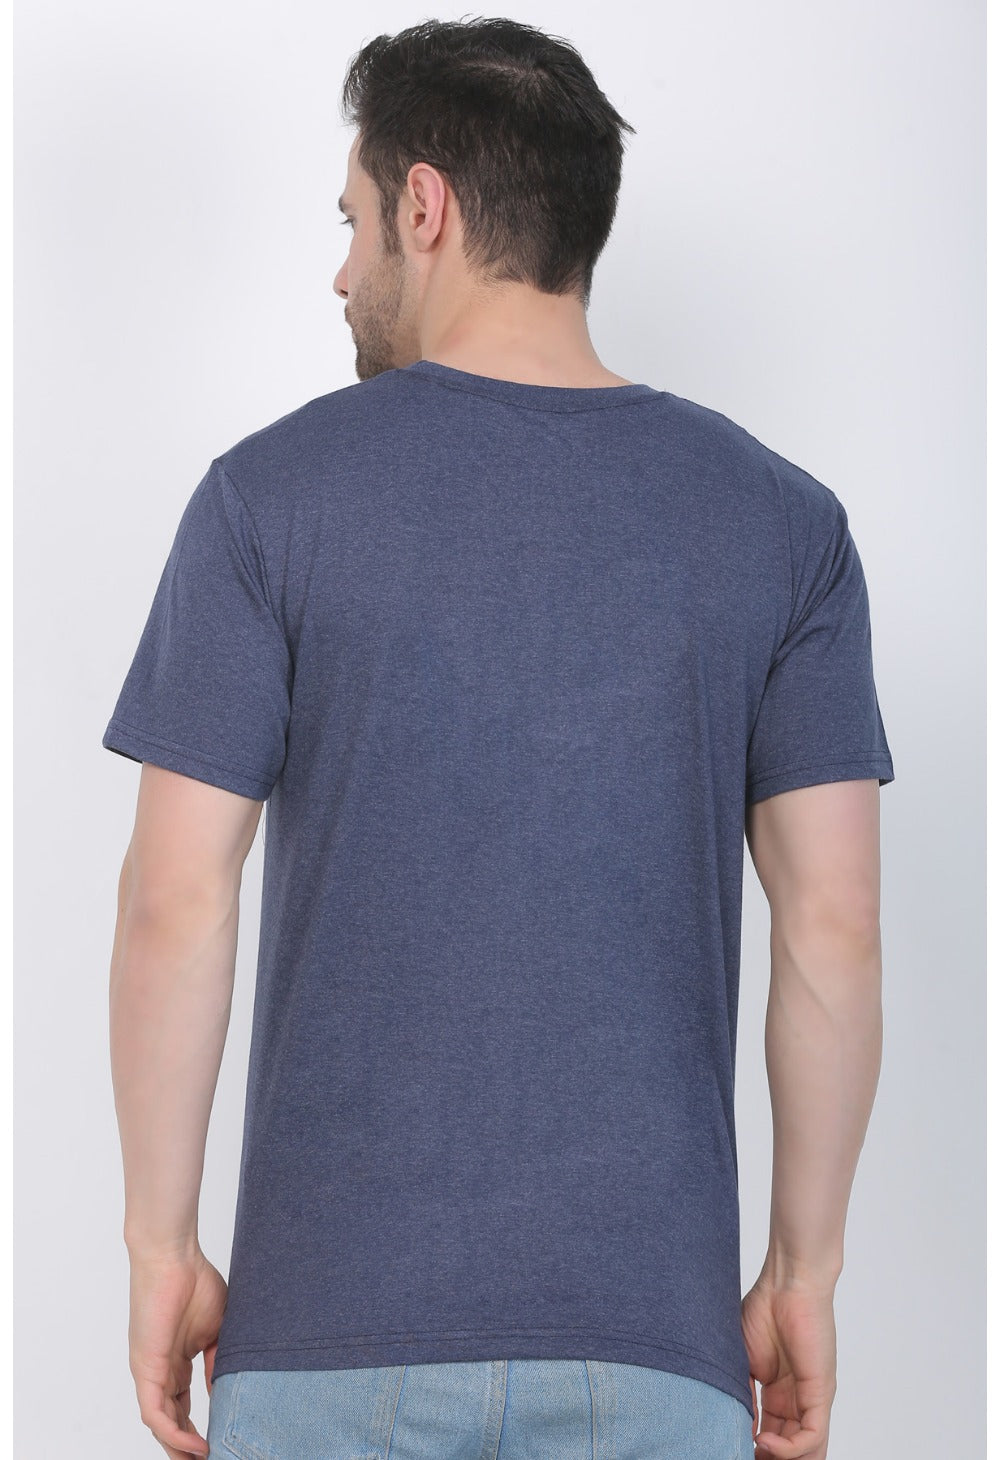 Men's Cotton Jersey V Neck Printed Tshirt (Blue Melange) - GillKart